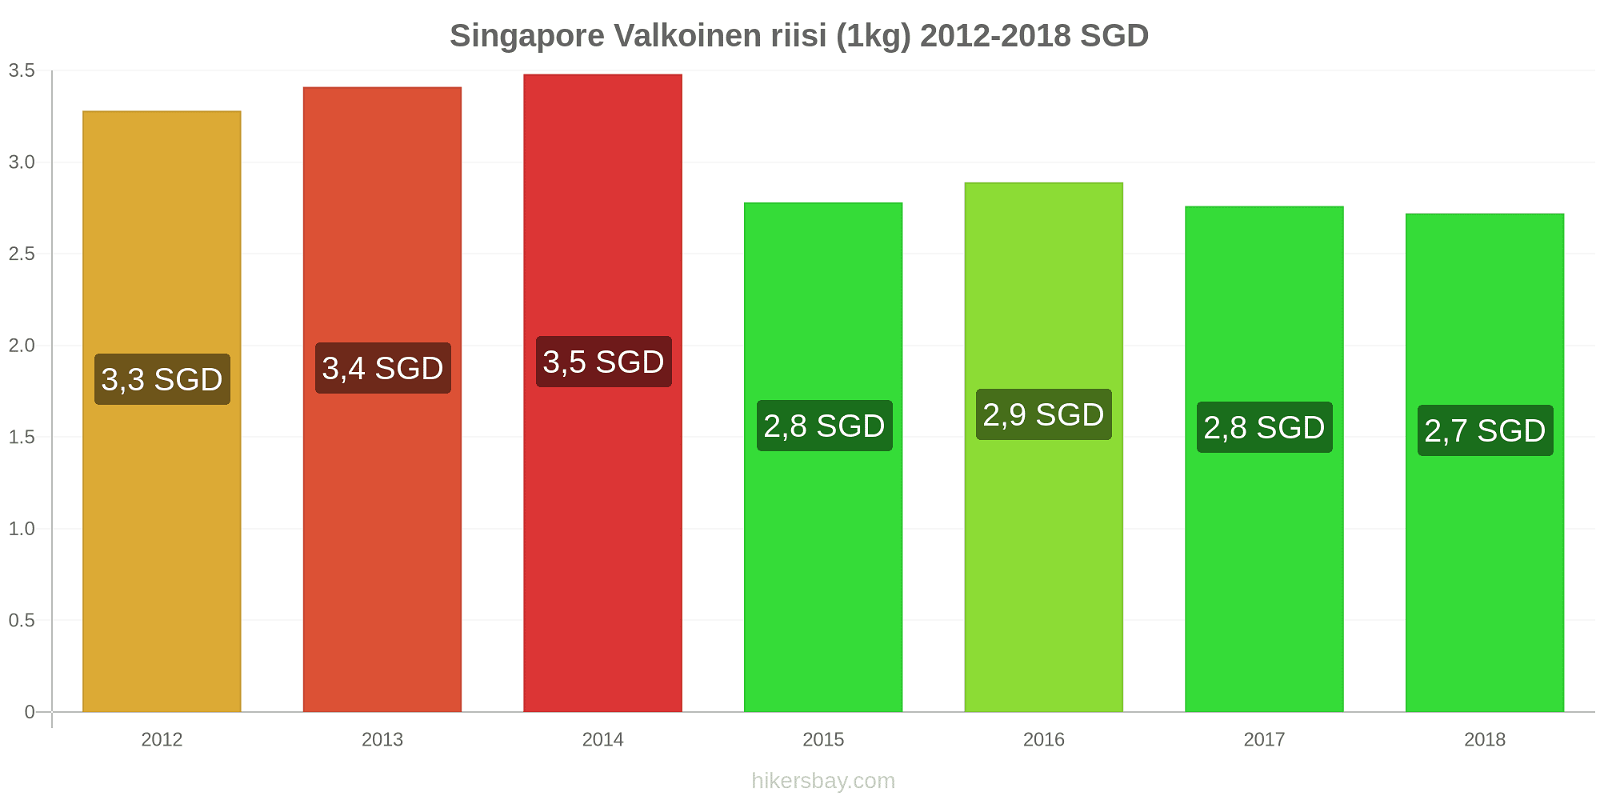 Singapore hintojen muutokset Valkoinen riisi (1kg) hikersbay.com